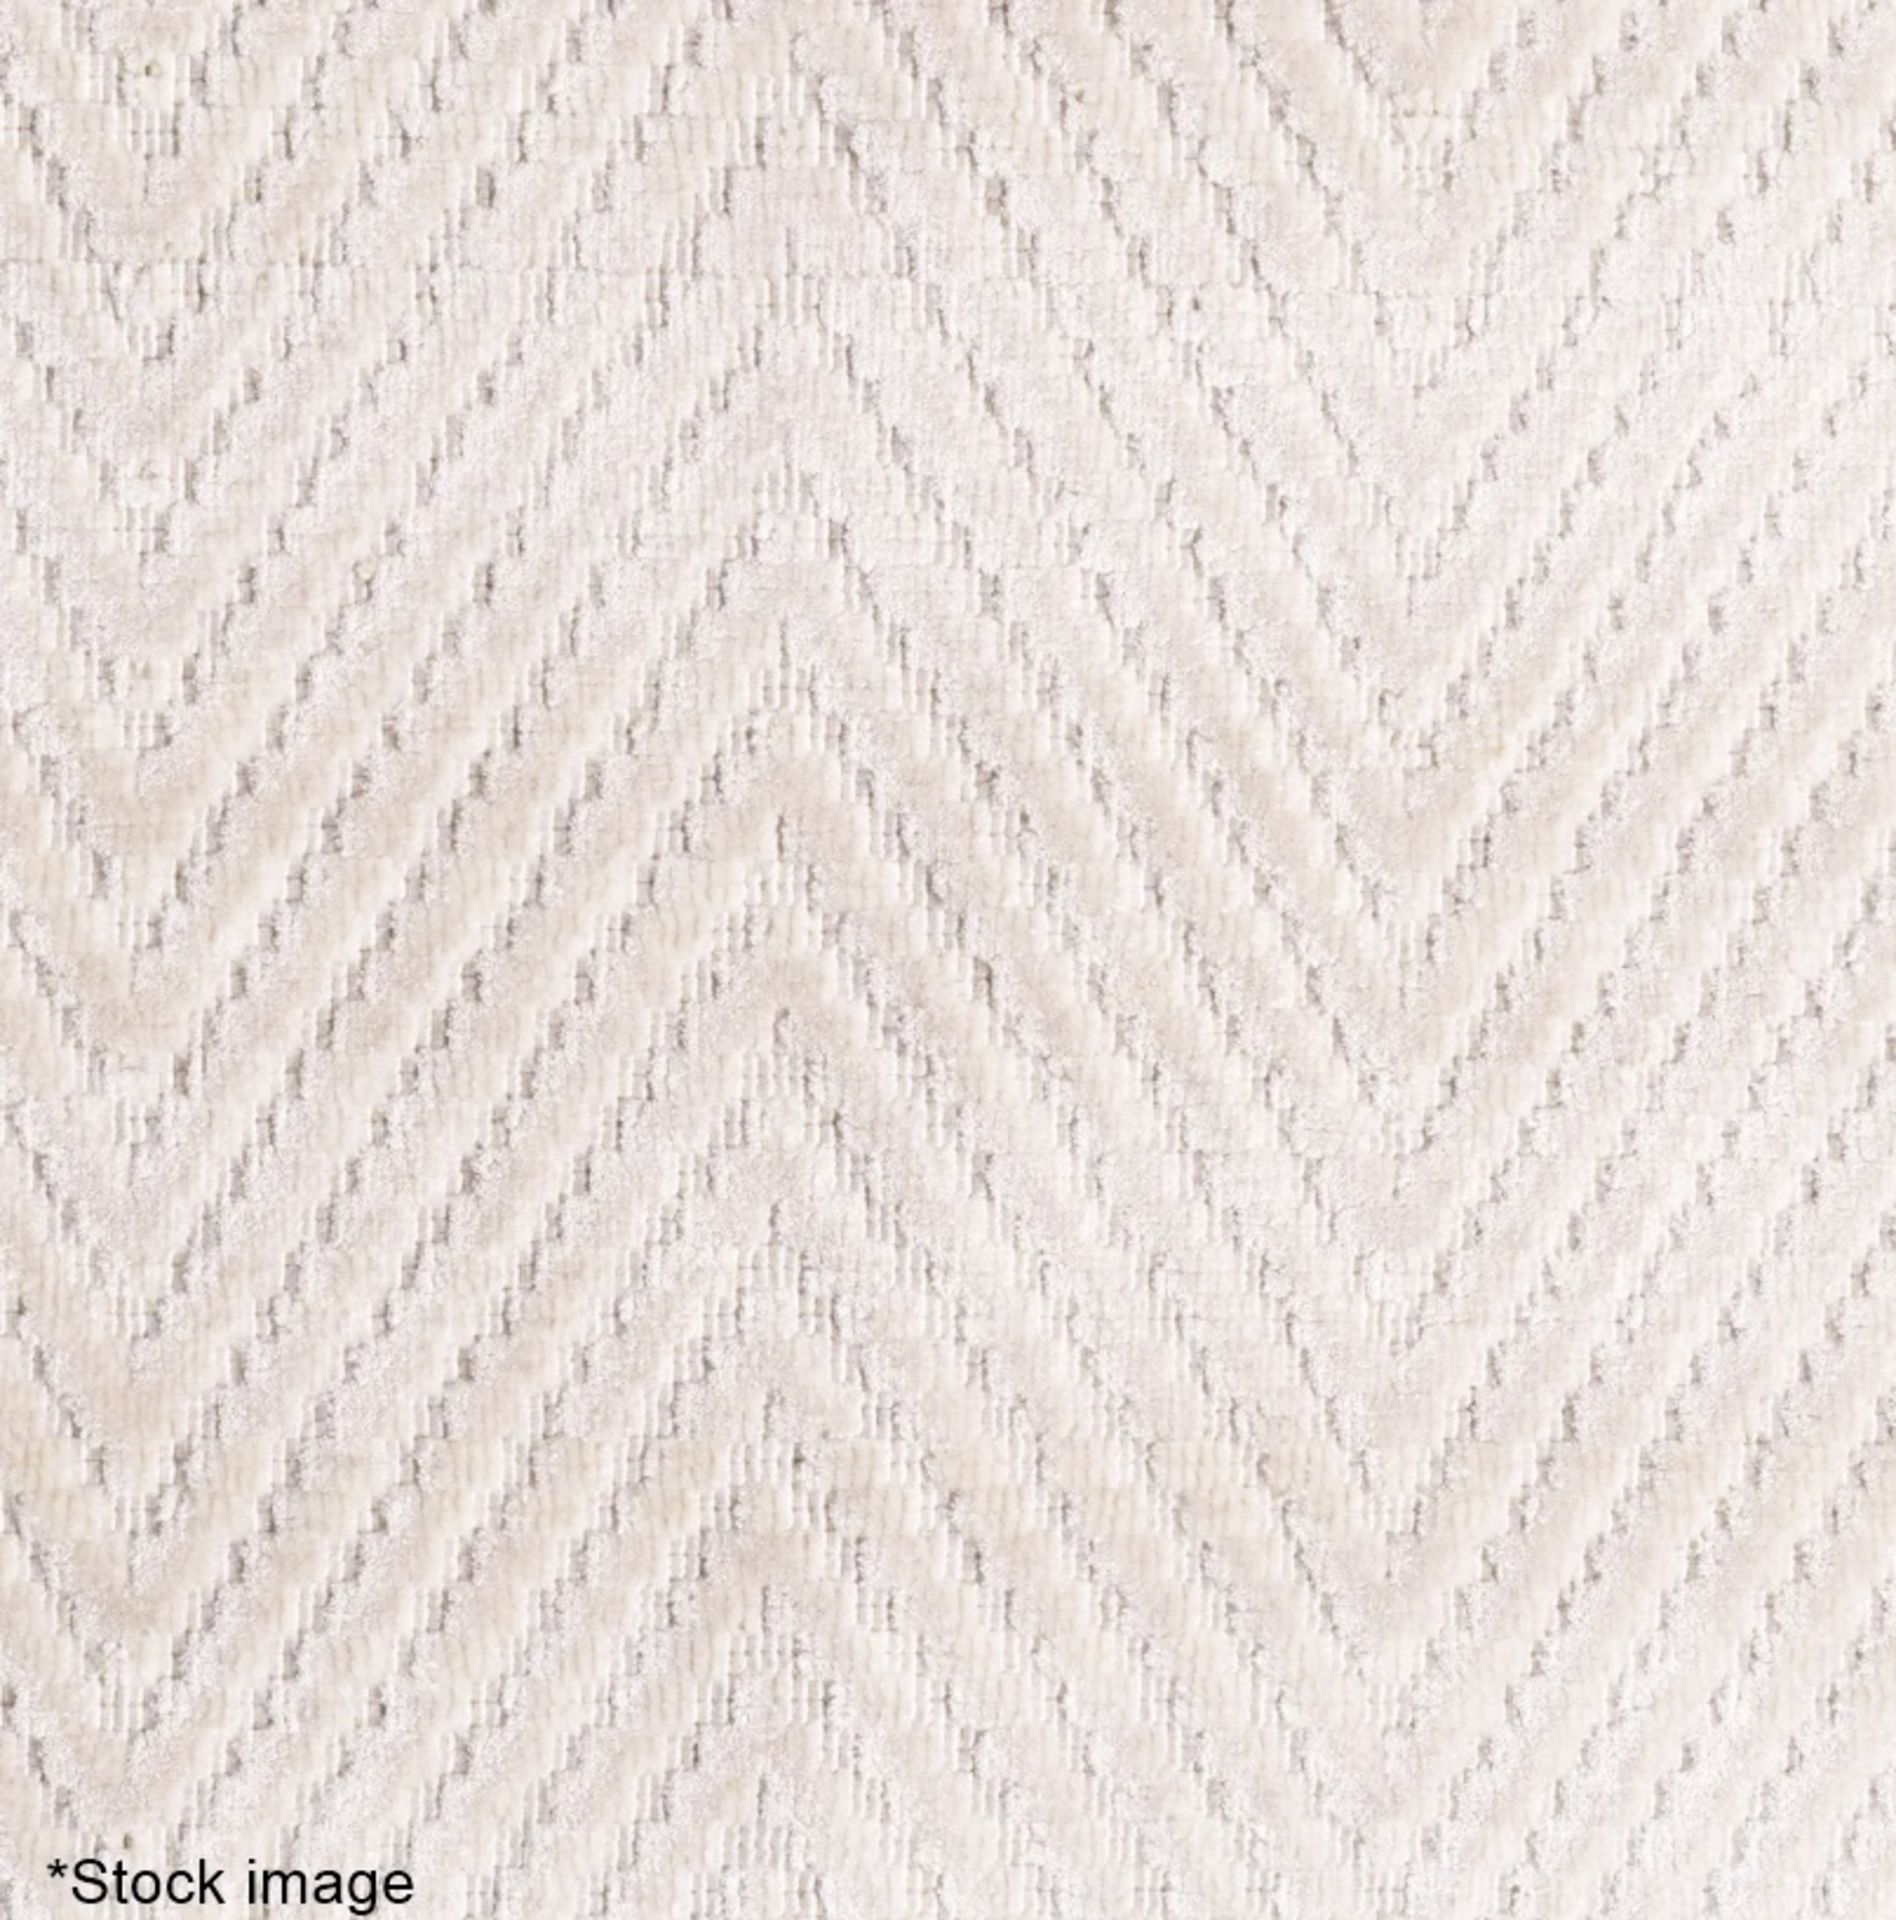 1 x EICHHOLTZ Luxury Handwoven Herringbone Carpet Rug, 200 x 300cm - Original Price £1,886 - Image 2 of 9